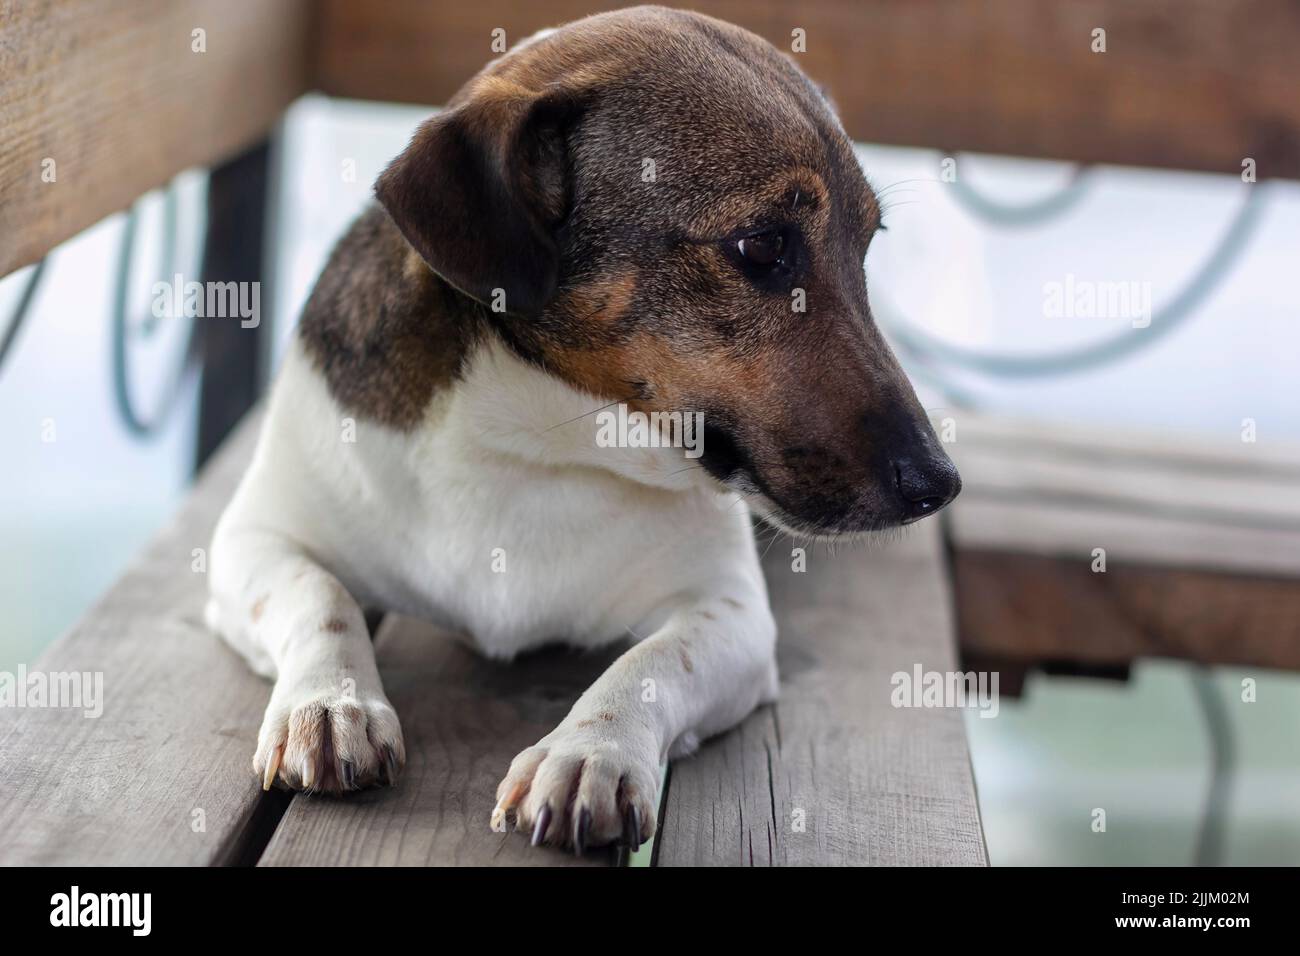 Jack Russell Terrier perro se sienta en un banco de madera con la cabeza girada Foto de stock